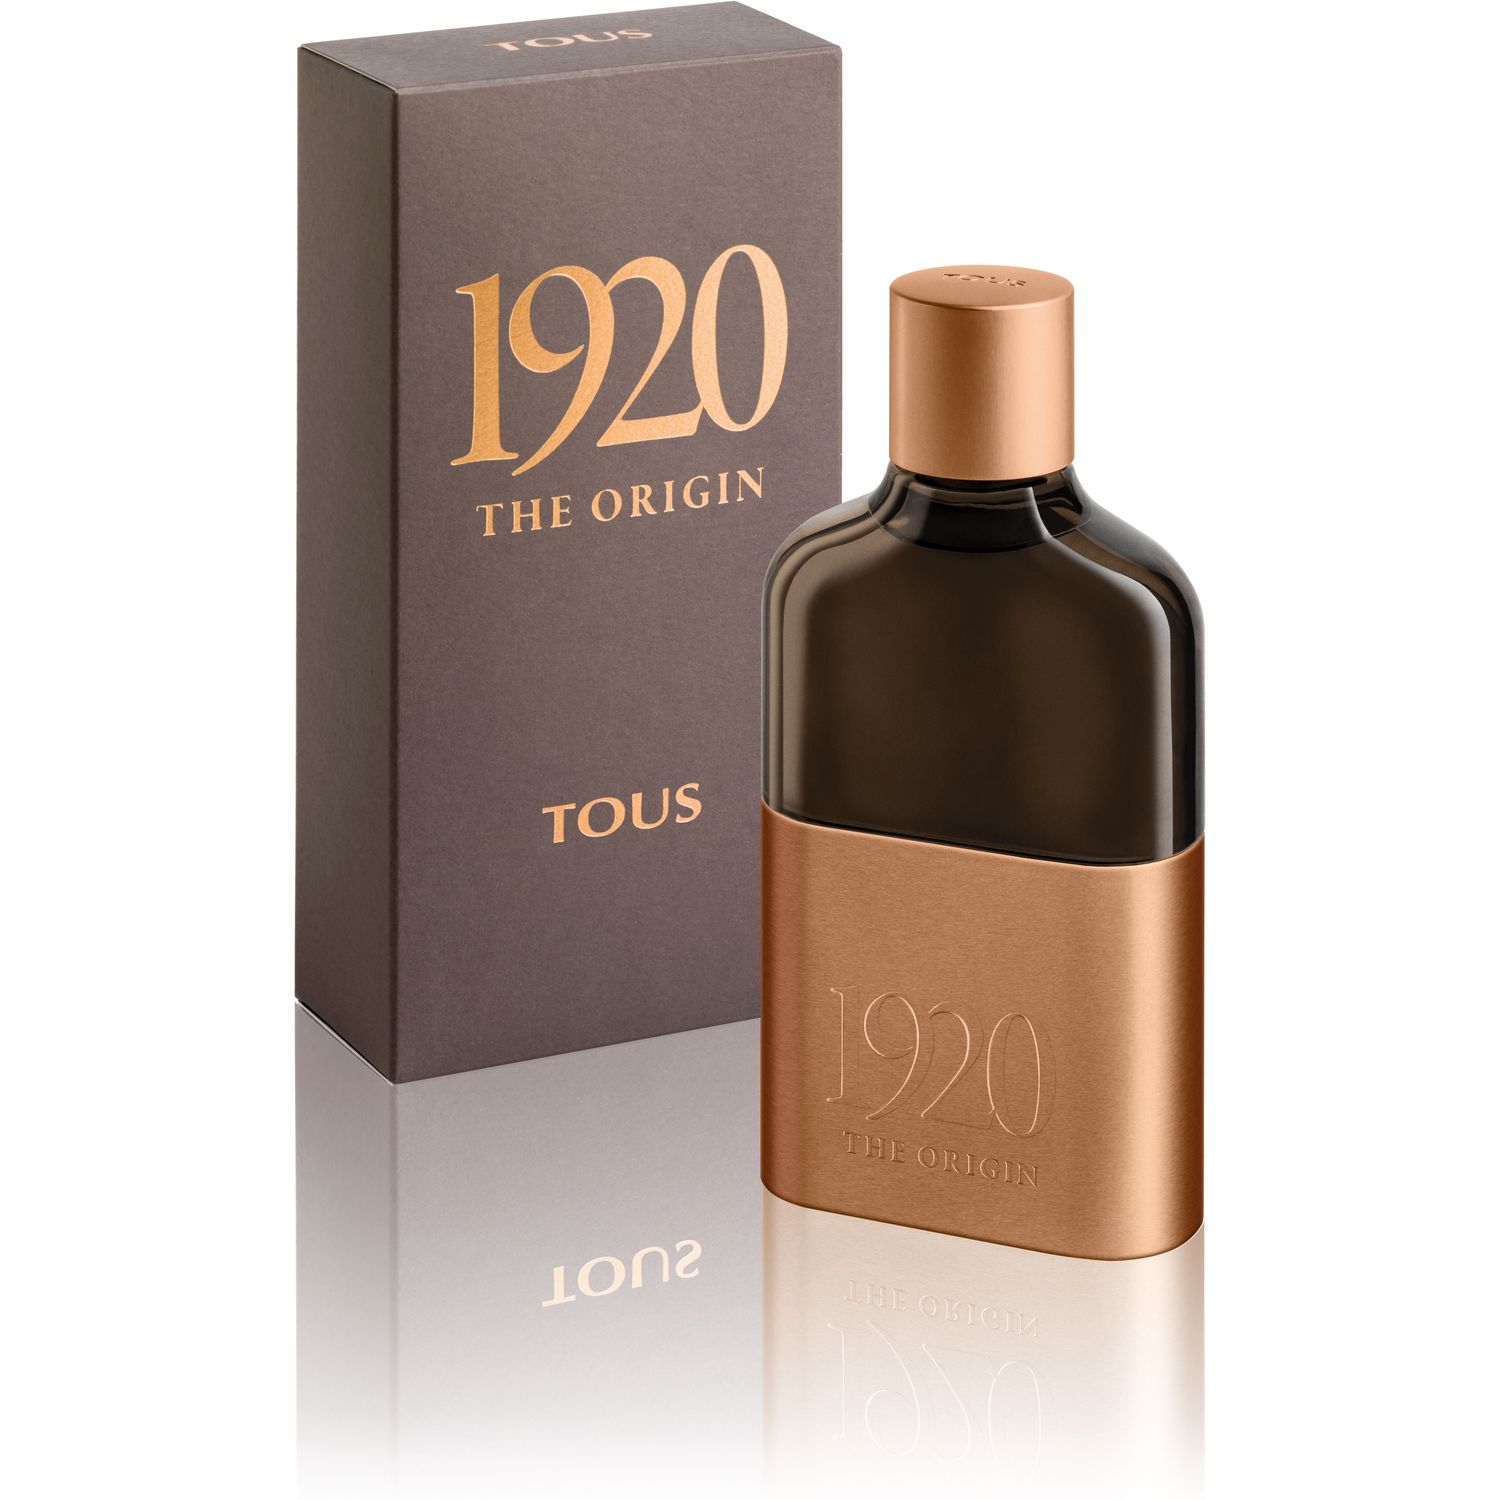 Фото - Чоловічі парфуми Tous Парфумована вода для чоловіків  1920 The Origin, 100 мл 